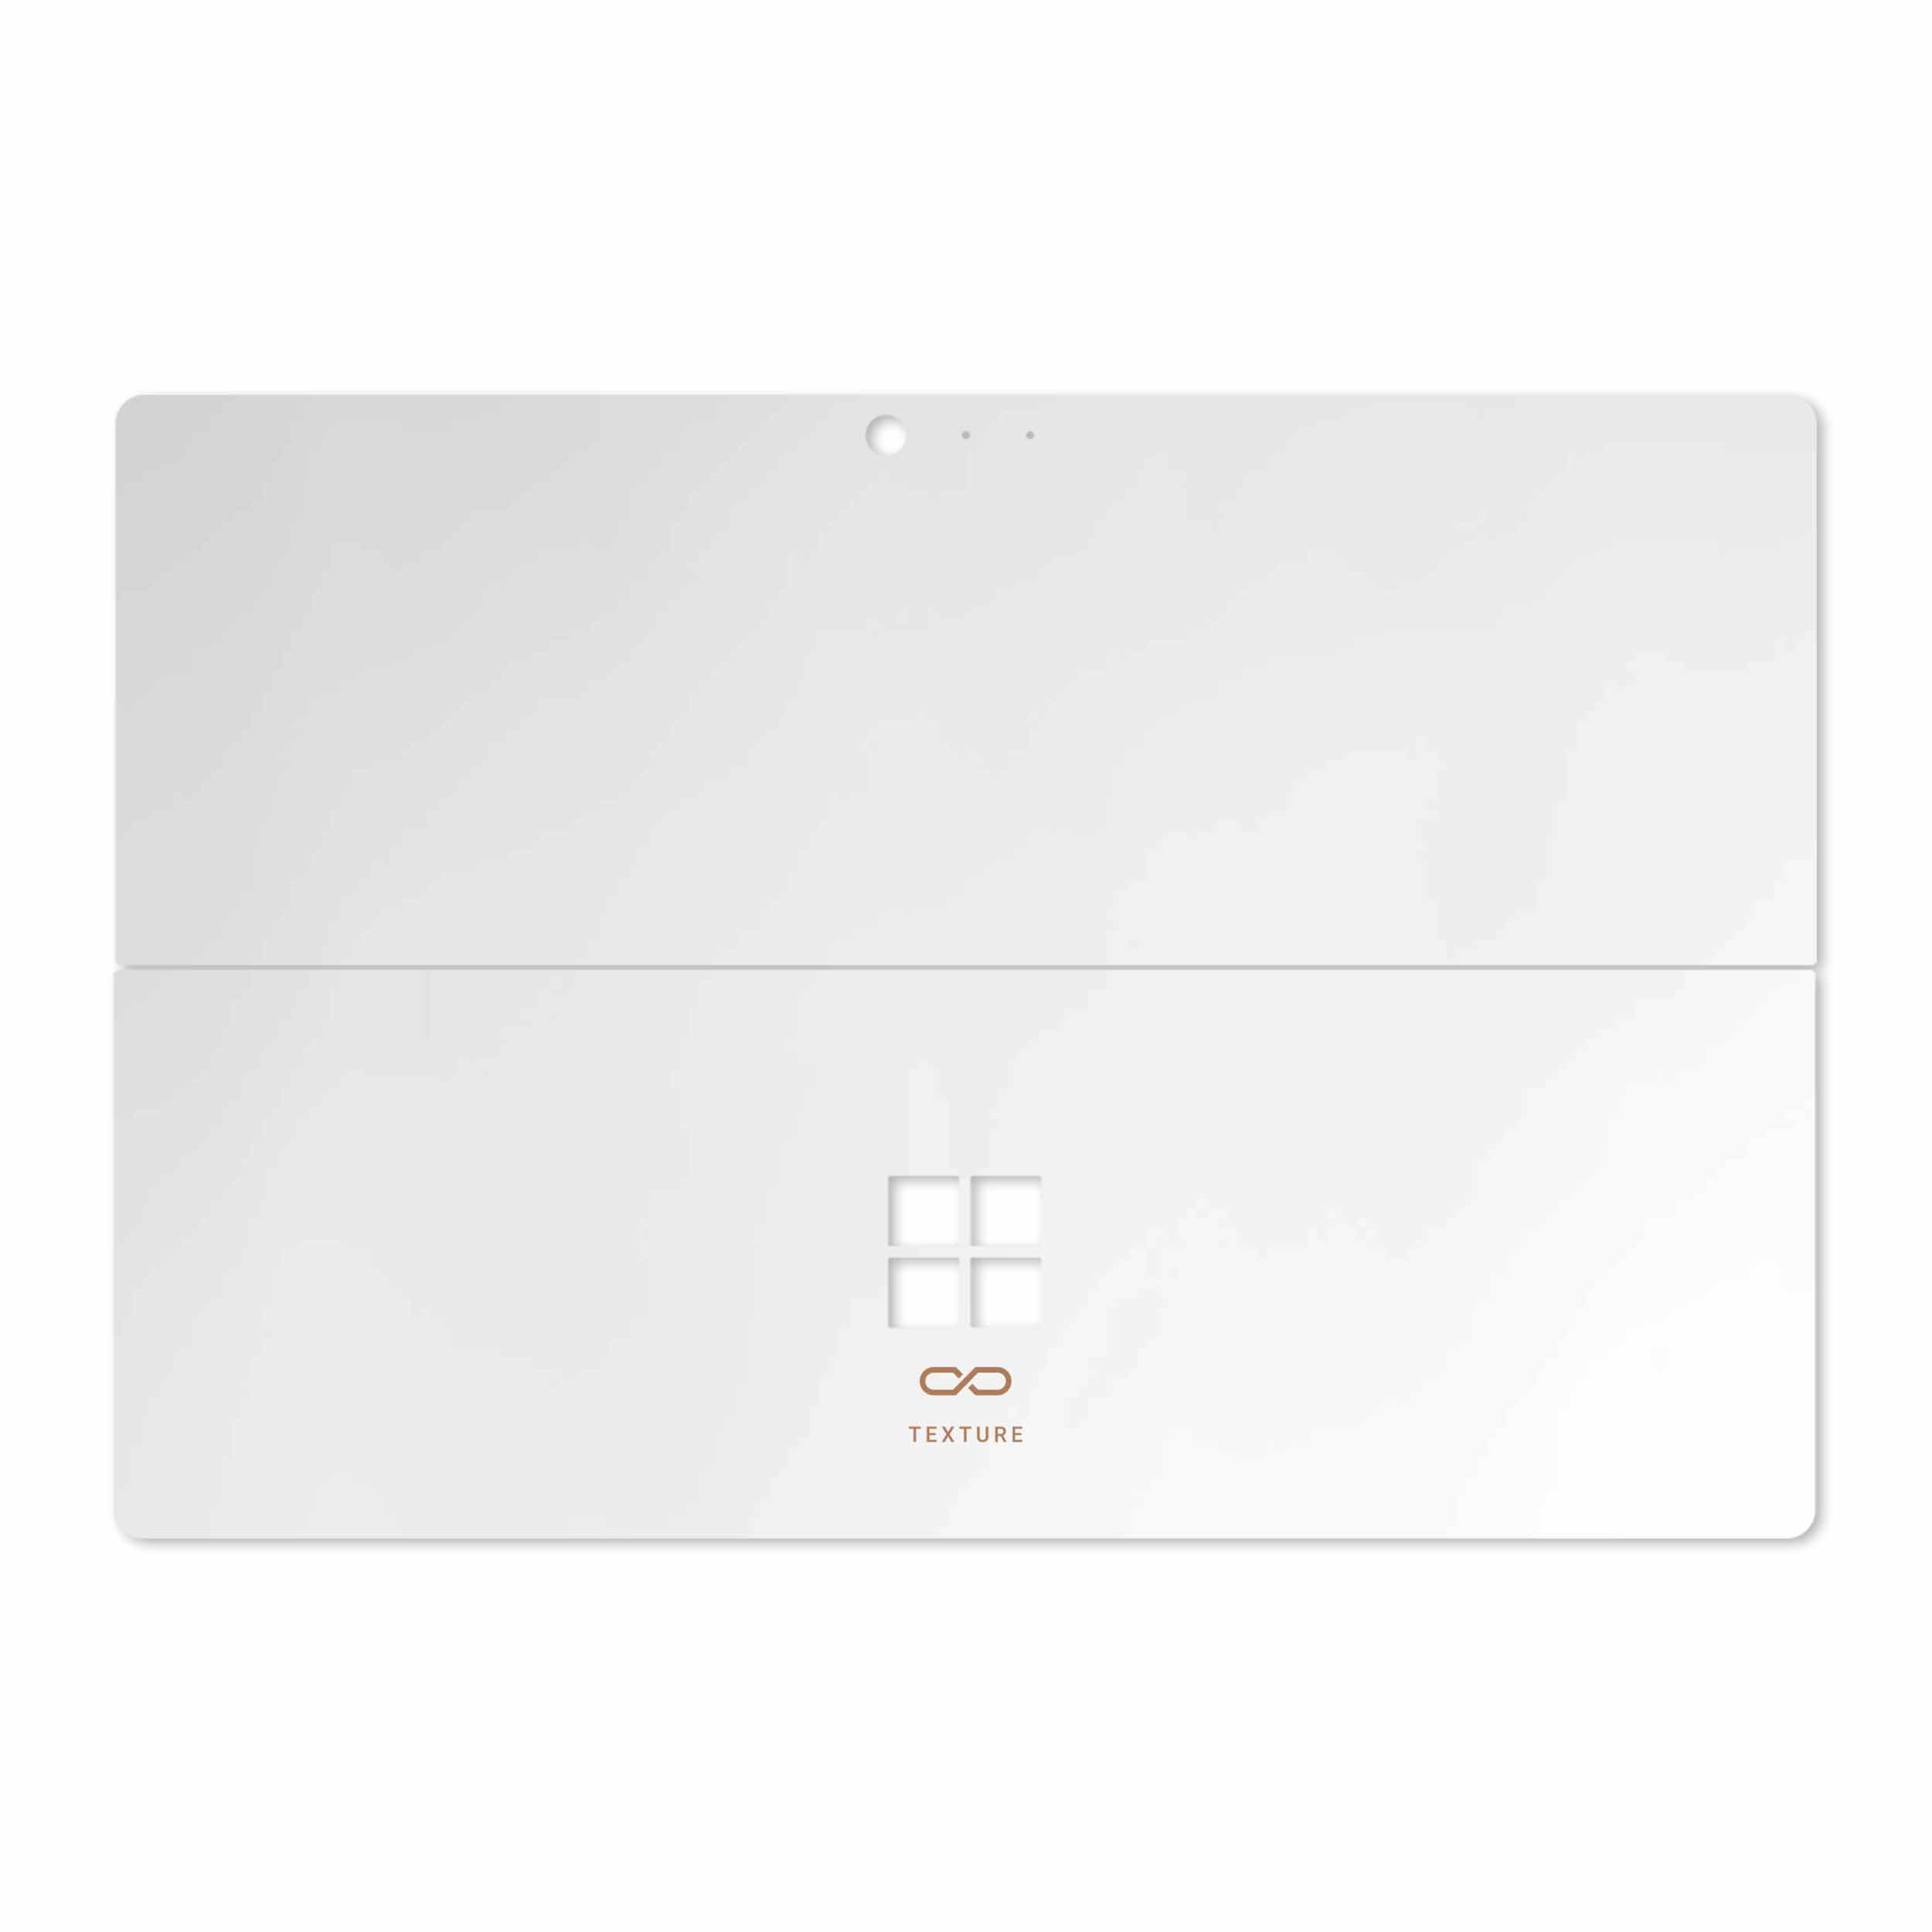 برچسب پوششی ماهوت مدل Matte-White مناسب برای تبلت مایکروسافت Surface Pro 4 2015